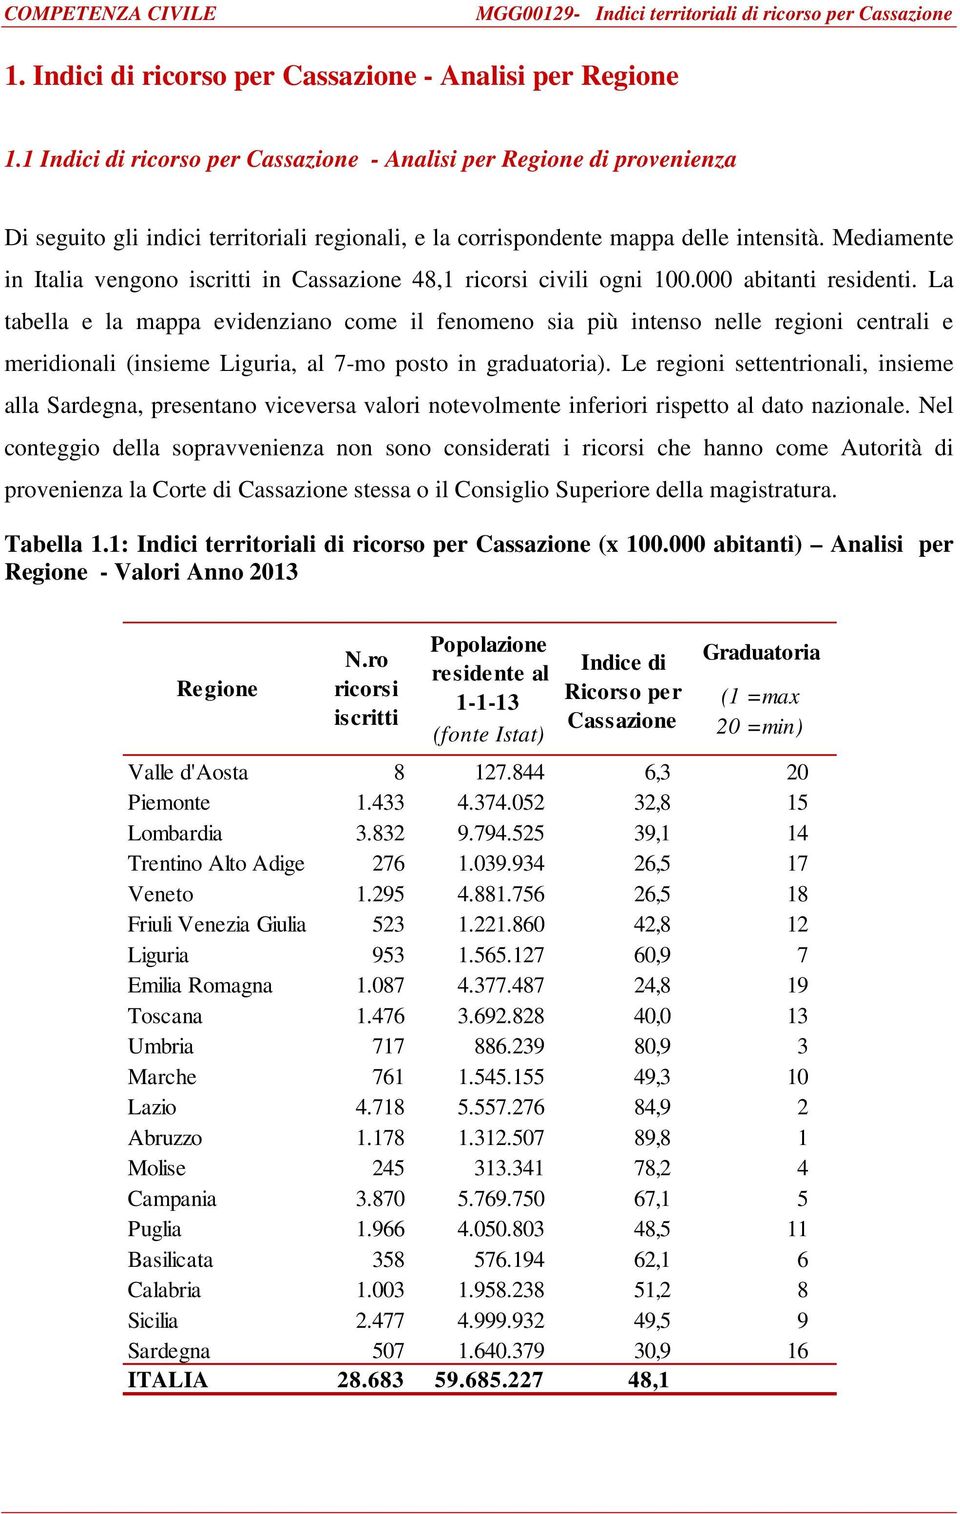 Mediamente in Italia vengono iscritti in Cassazione 48,1 ricorsi civili ogni 100.000 abitanti residenti.